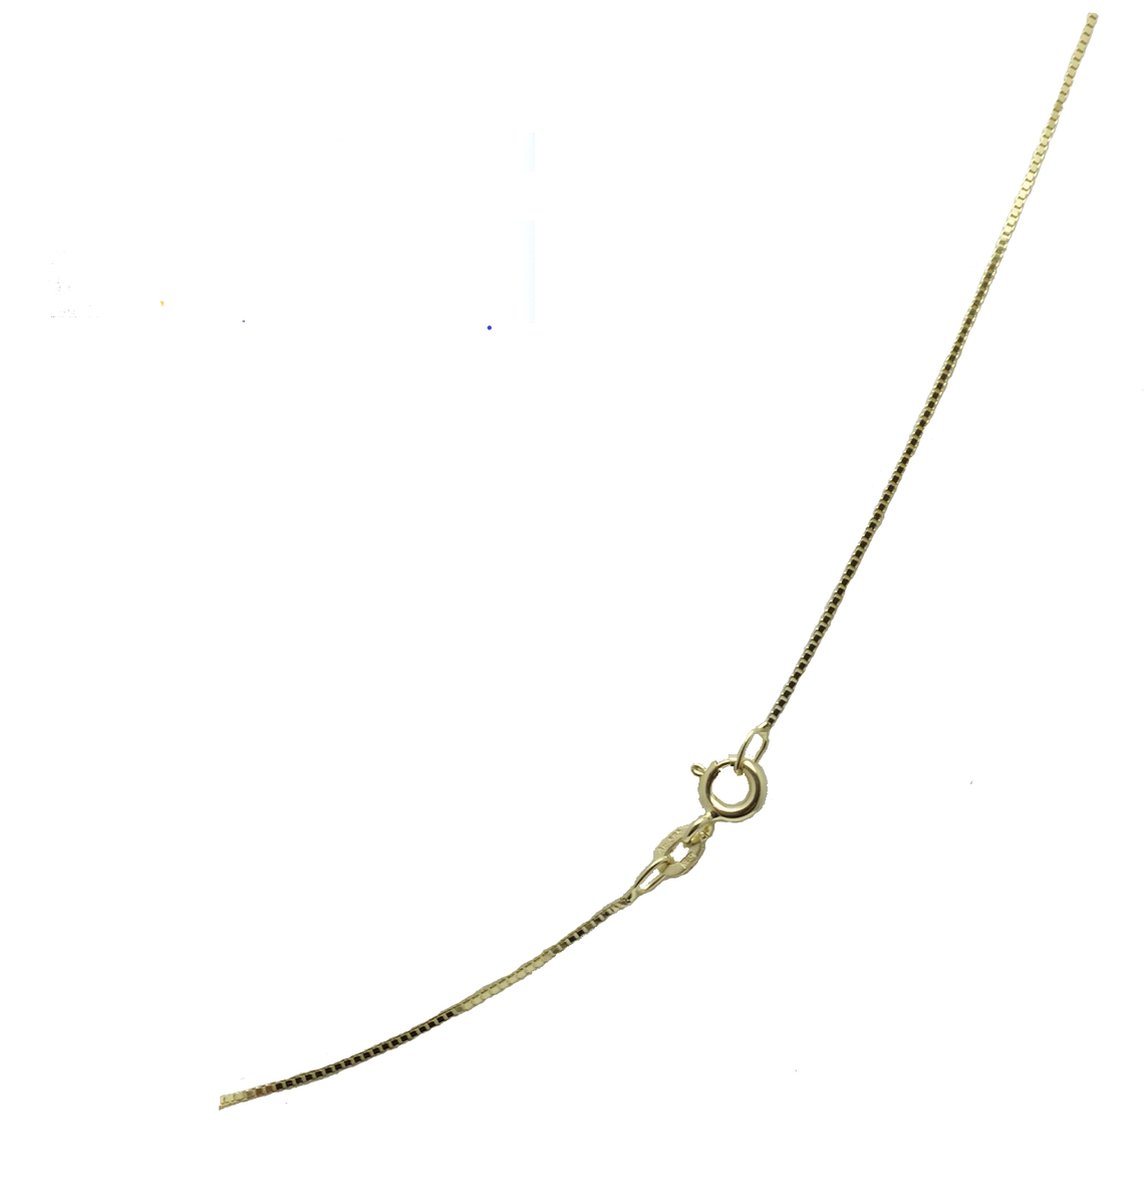 Ketting – venetiaan - 60 cm – 2.8 gram - 0.8mm breed – 14 karaat - Verlinden juwelier